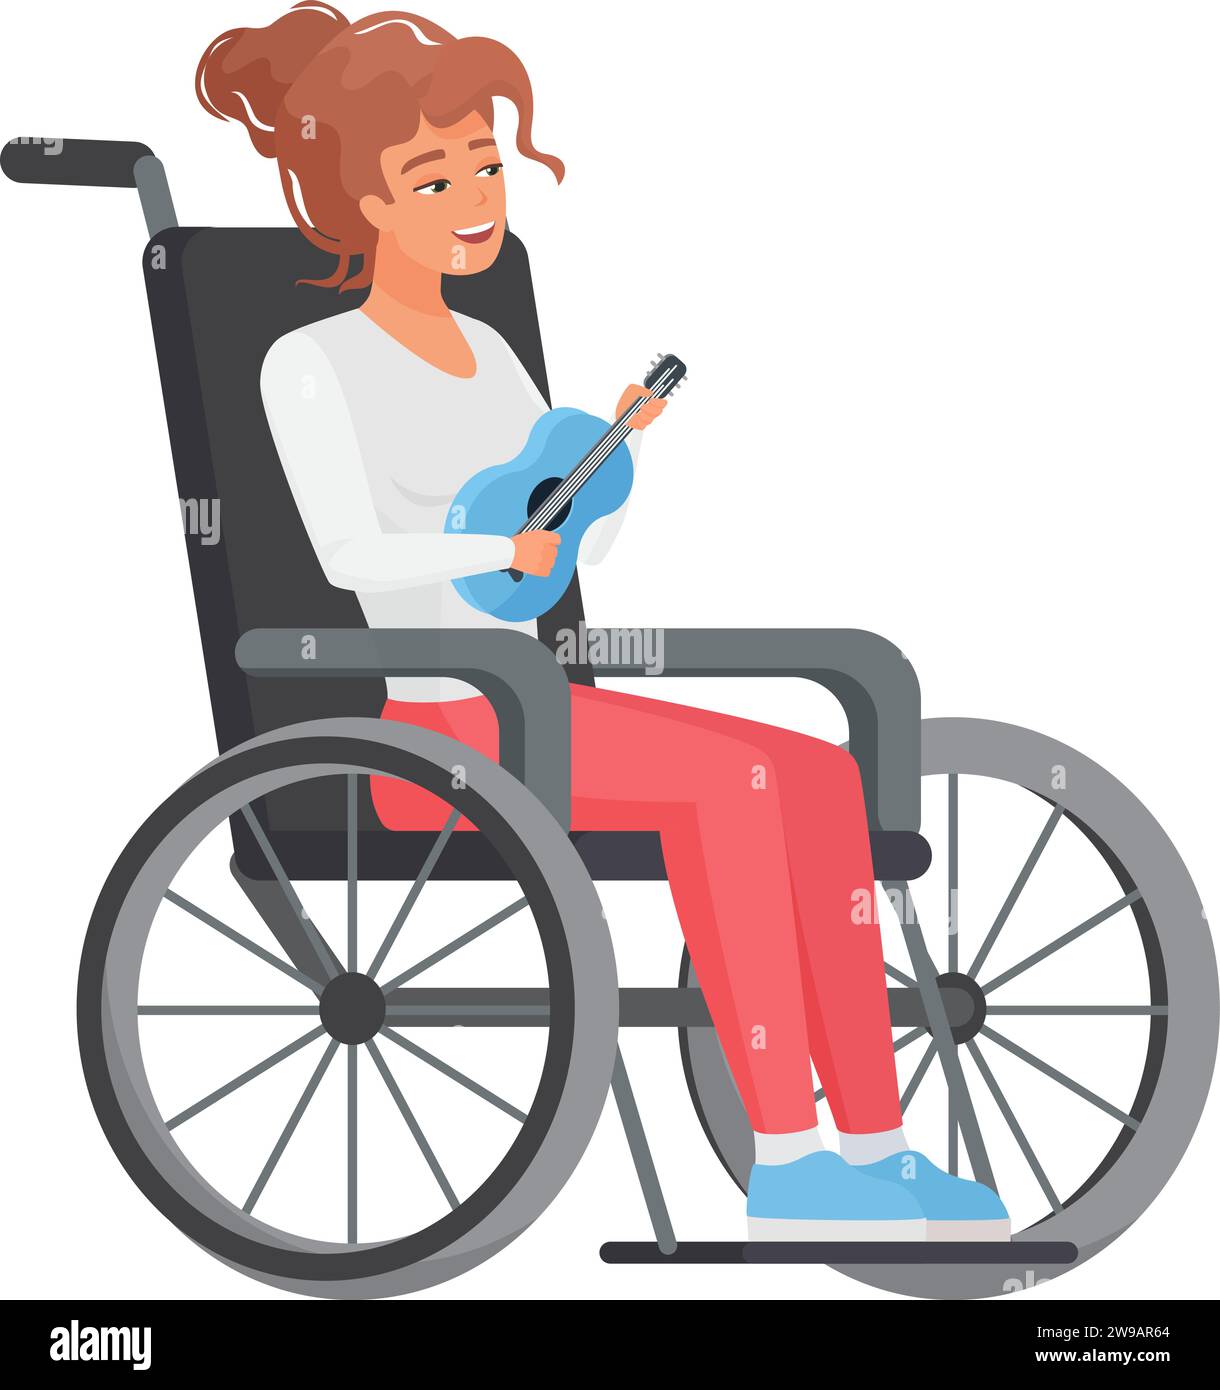 Frau im Rollstuhl spielt kleine Gitarre. Junge Dame mit eingeschränkter Mobilität mit Musikinstrument Cartoon Vektor Illustration Stock Vektor